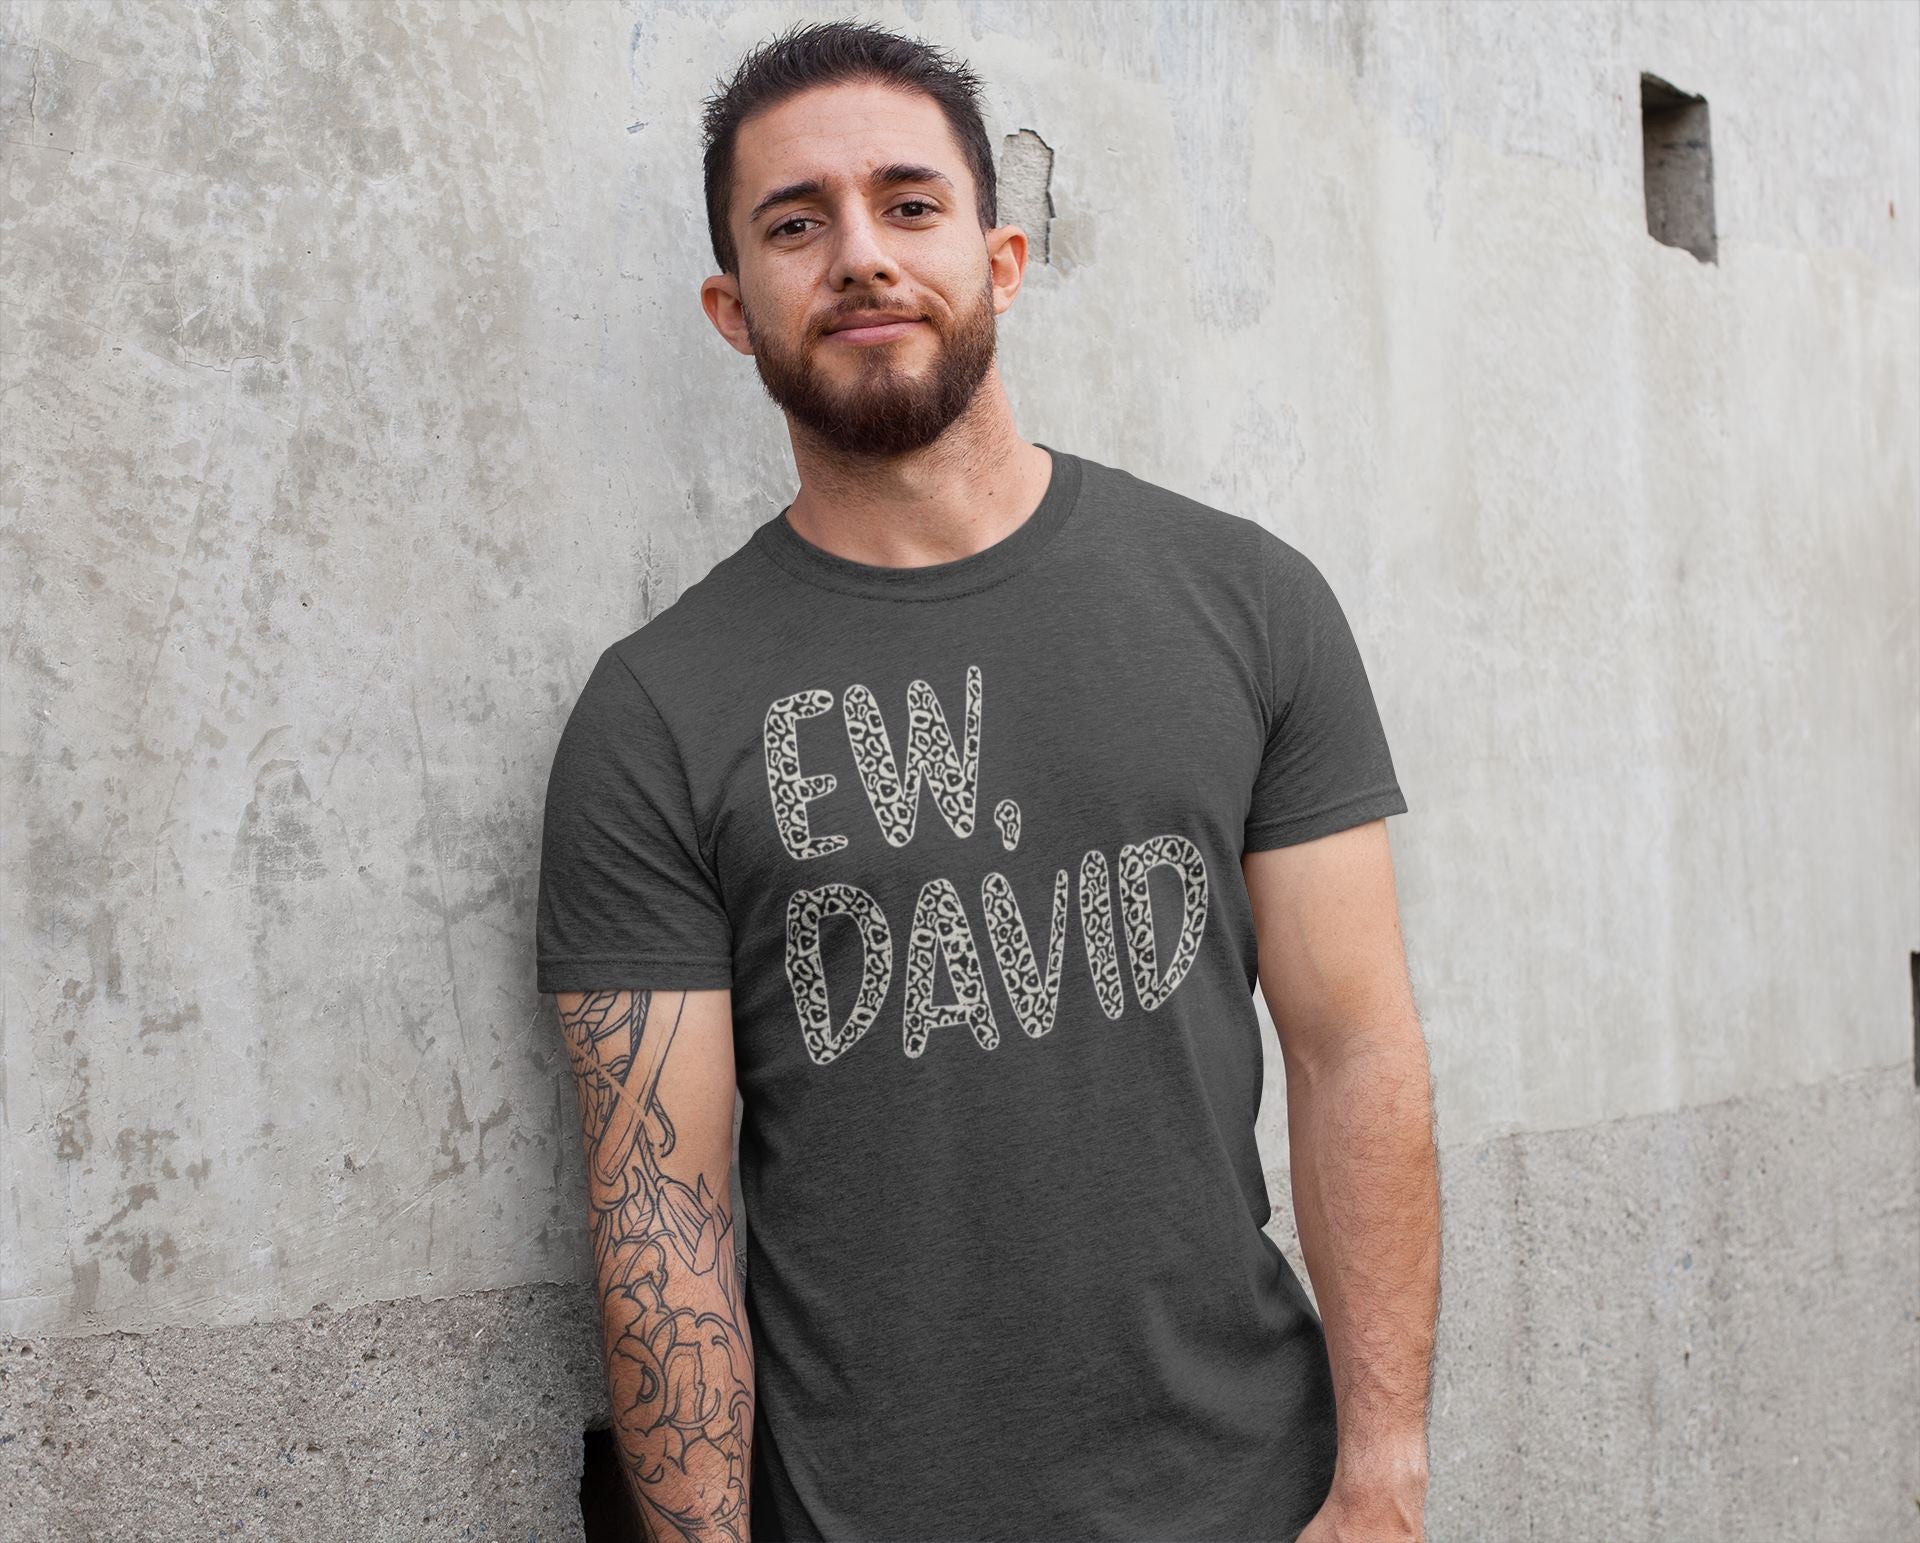 Ew David Official Schitt's Creek T Shirt for Men and Women freeshipping - Catch My Drift India